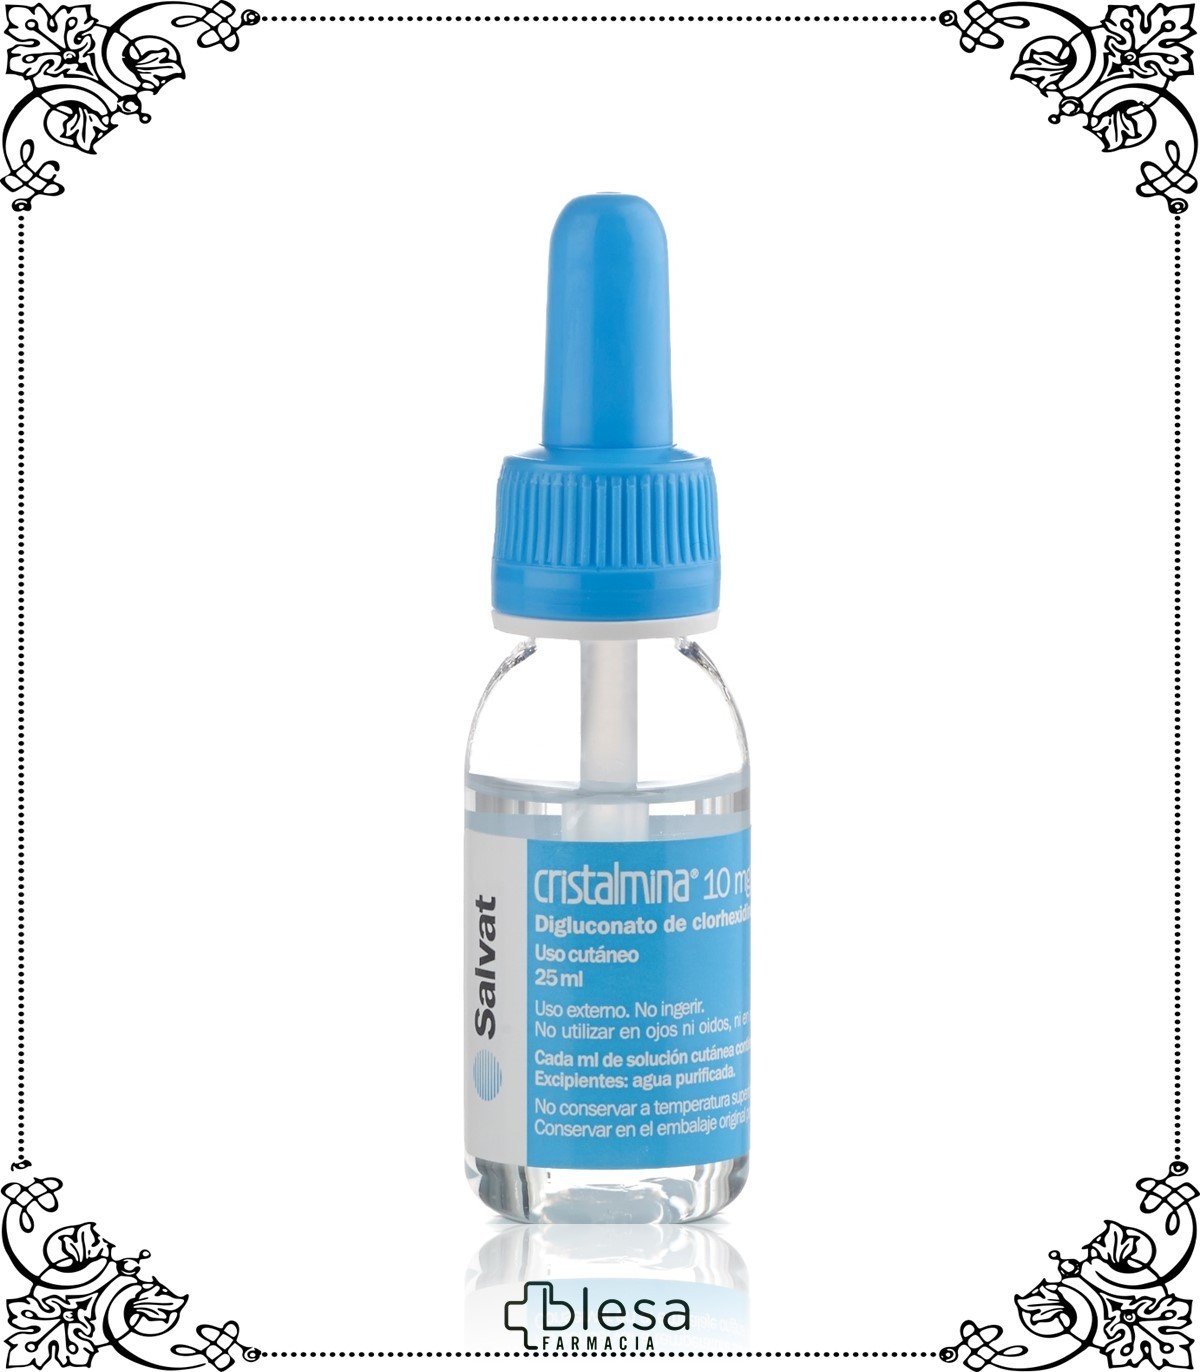 Cristalmina 10 mg/ml solución para pulverización cutánea 25 ml